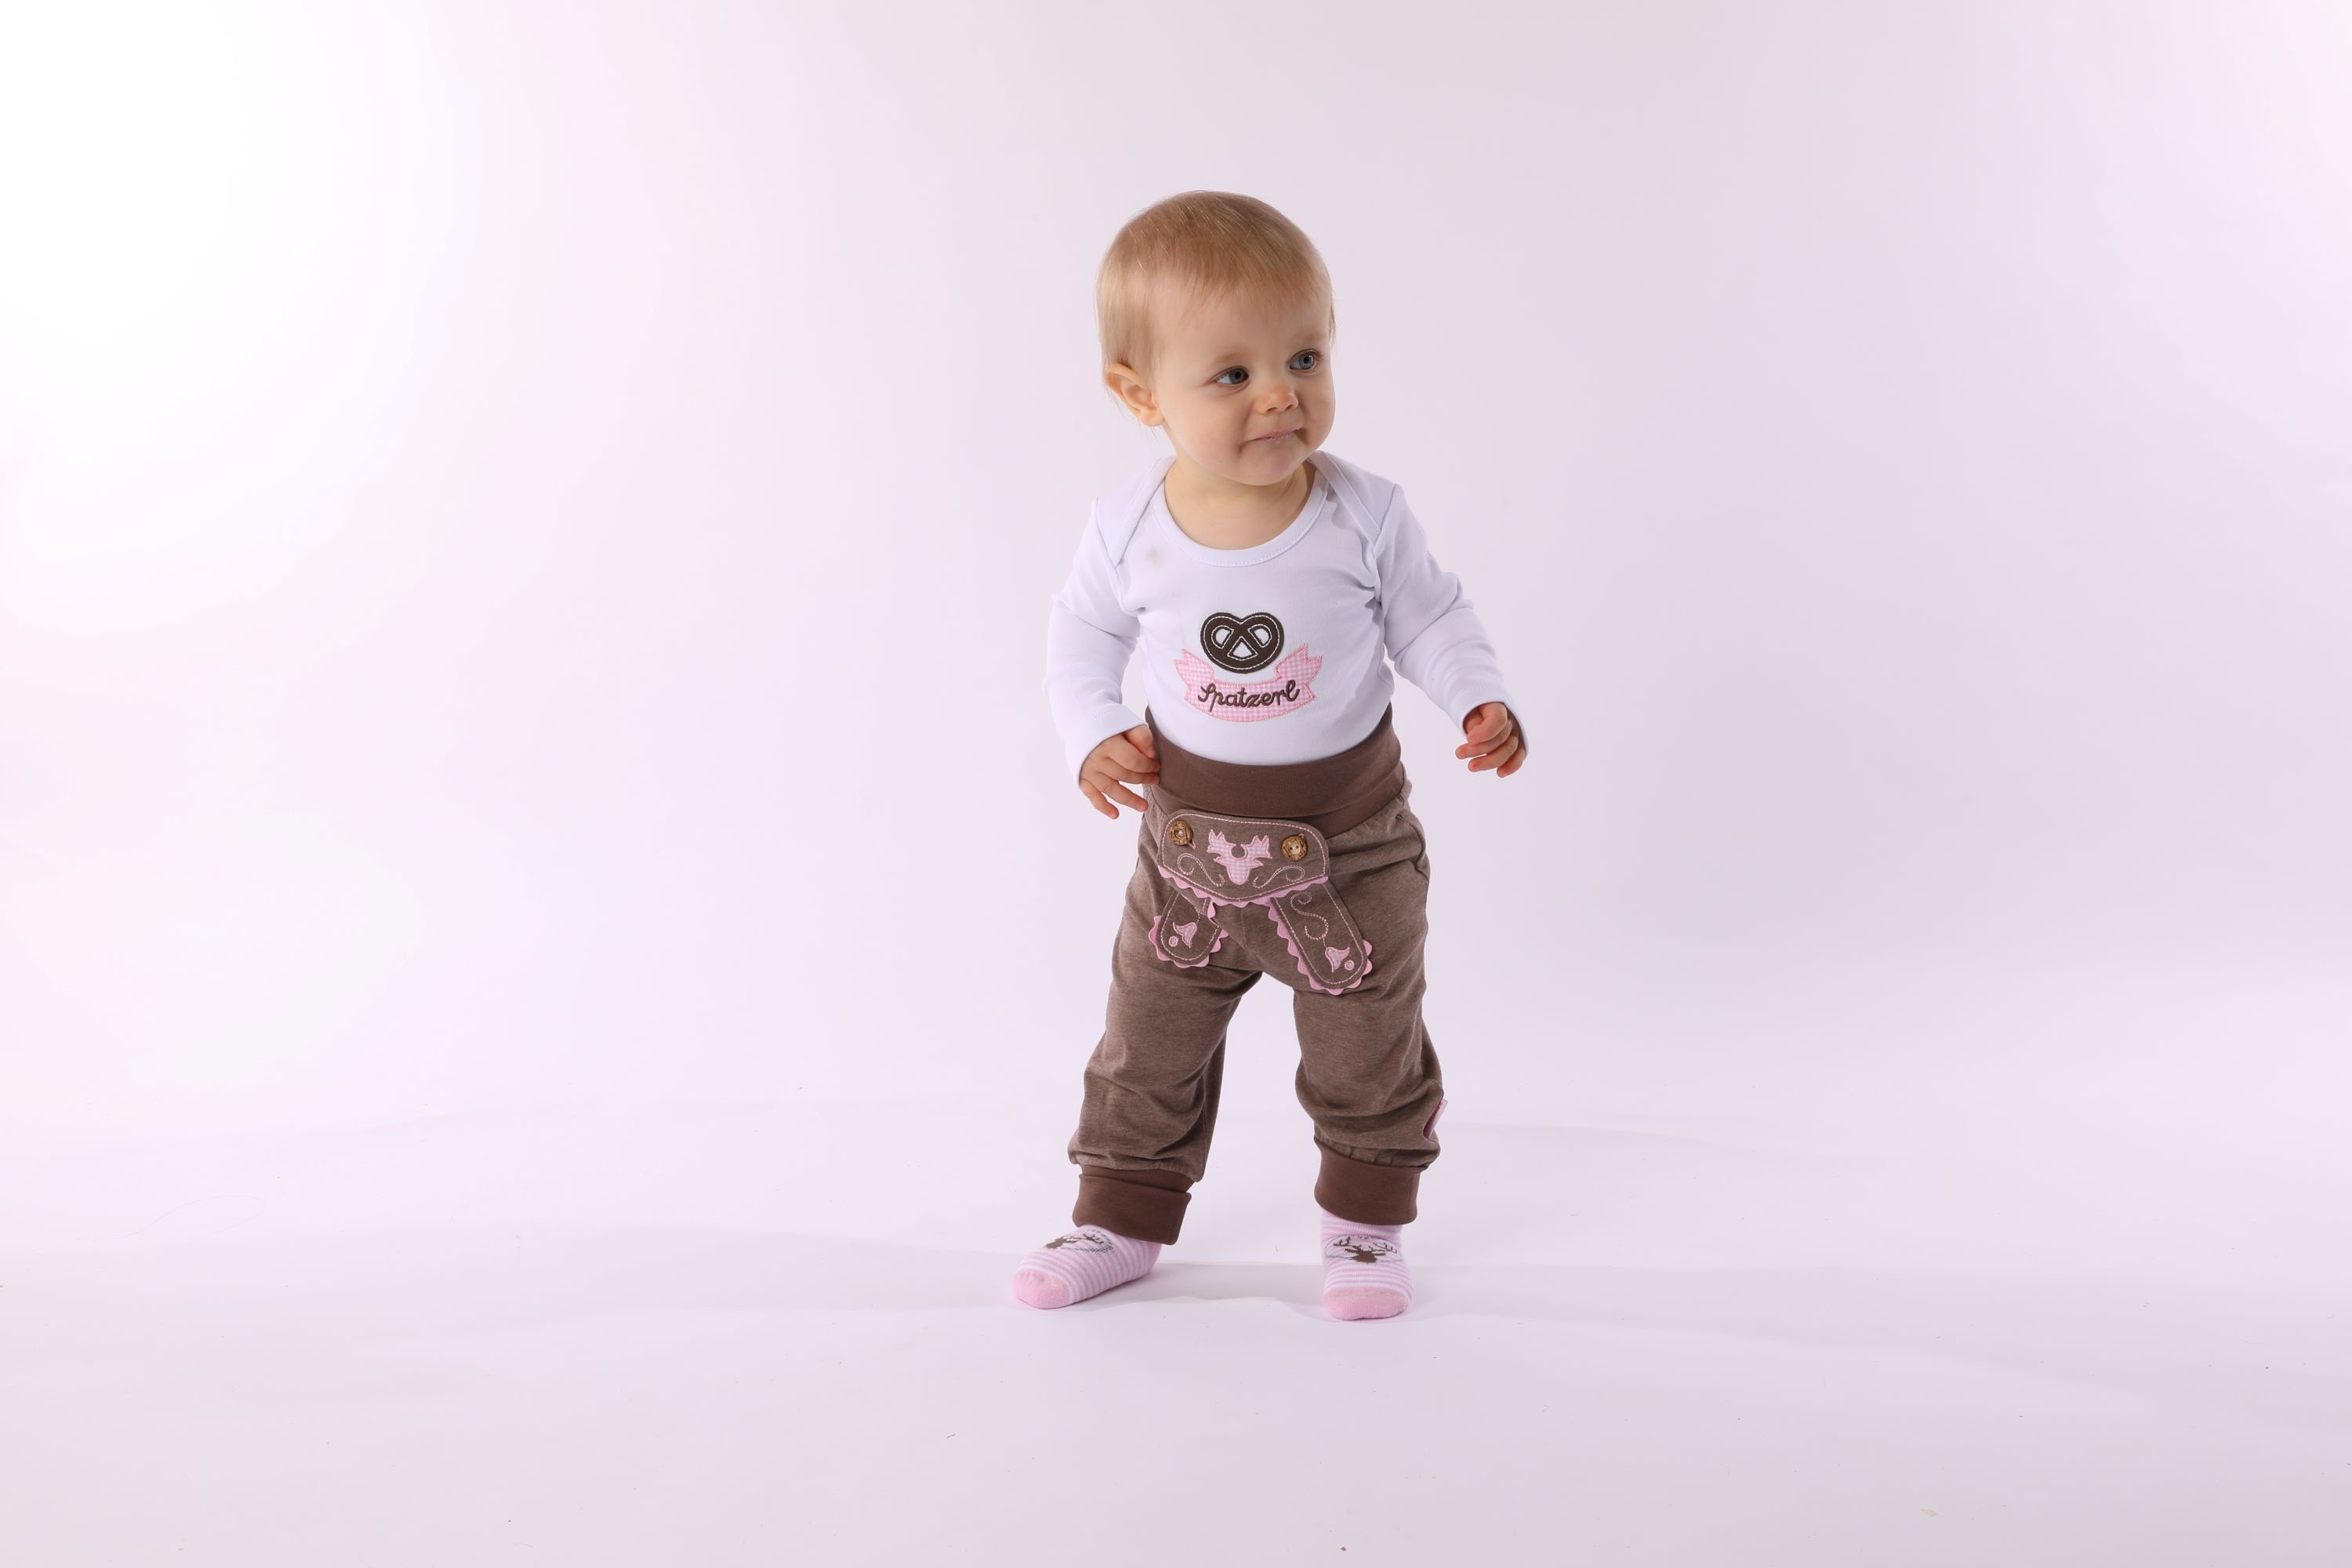 P.Eisenherz Trachtenhose Babyhose im Lederhosenstil mit rosa Stickerei mit elastischem Hosenbund